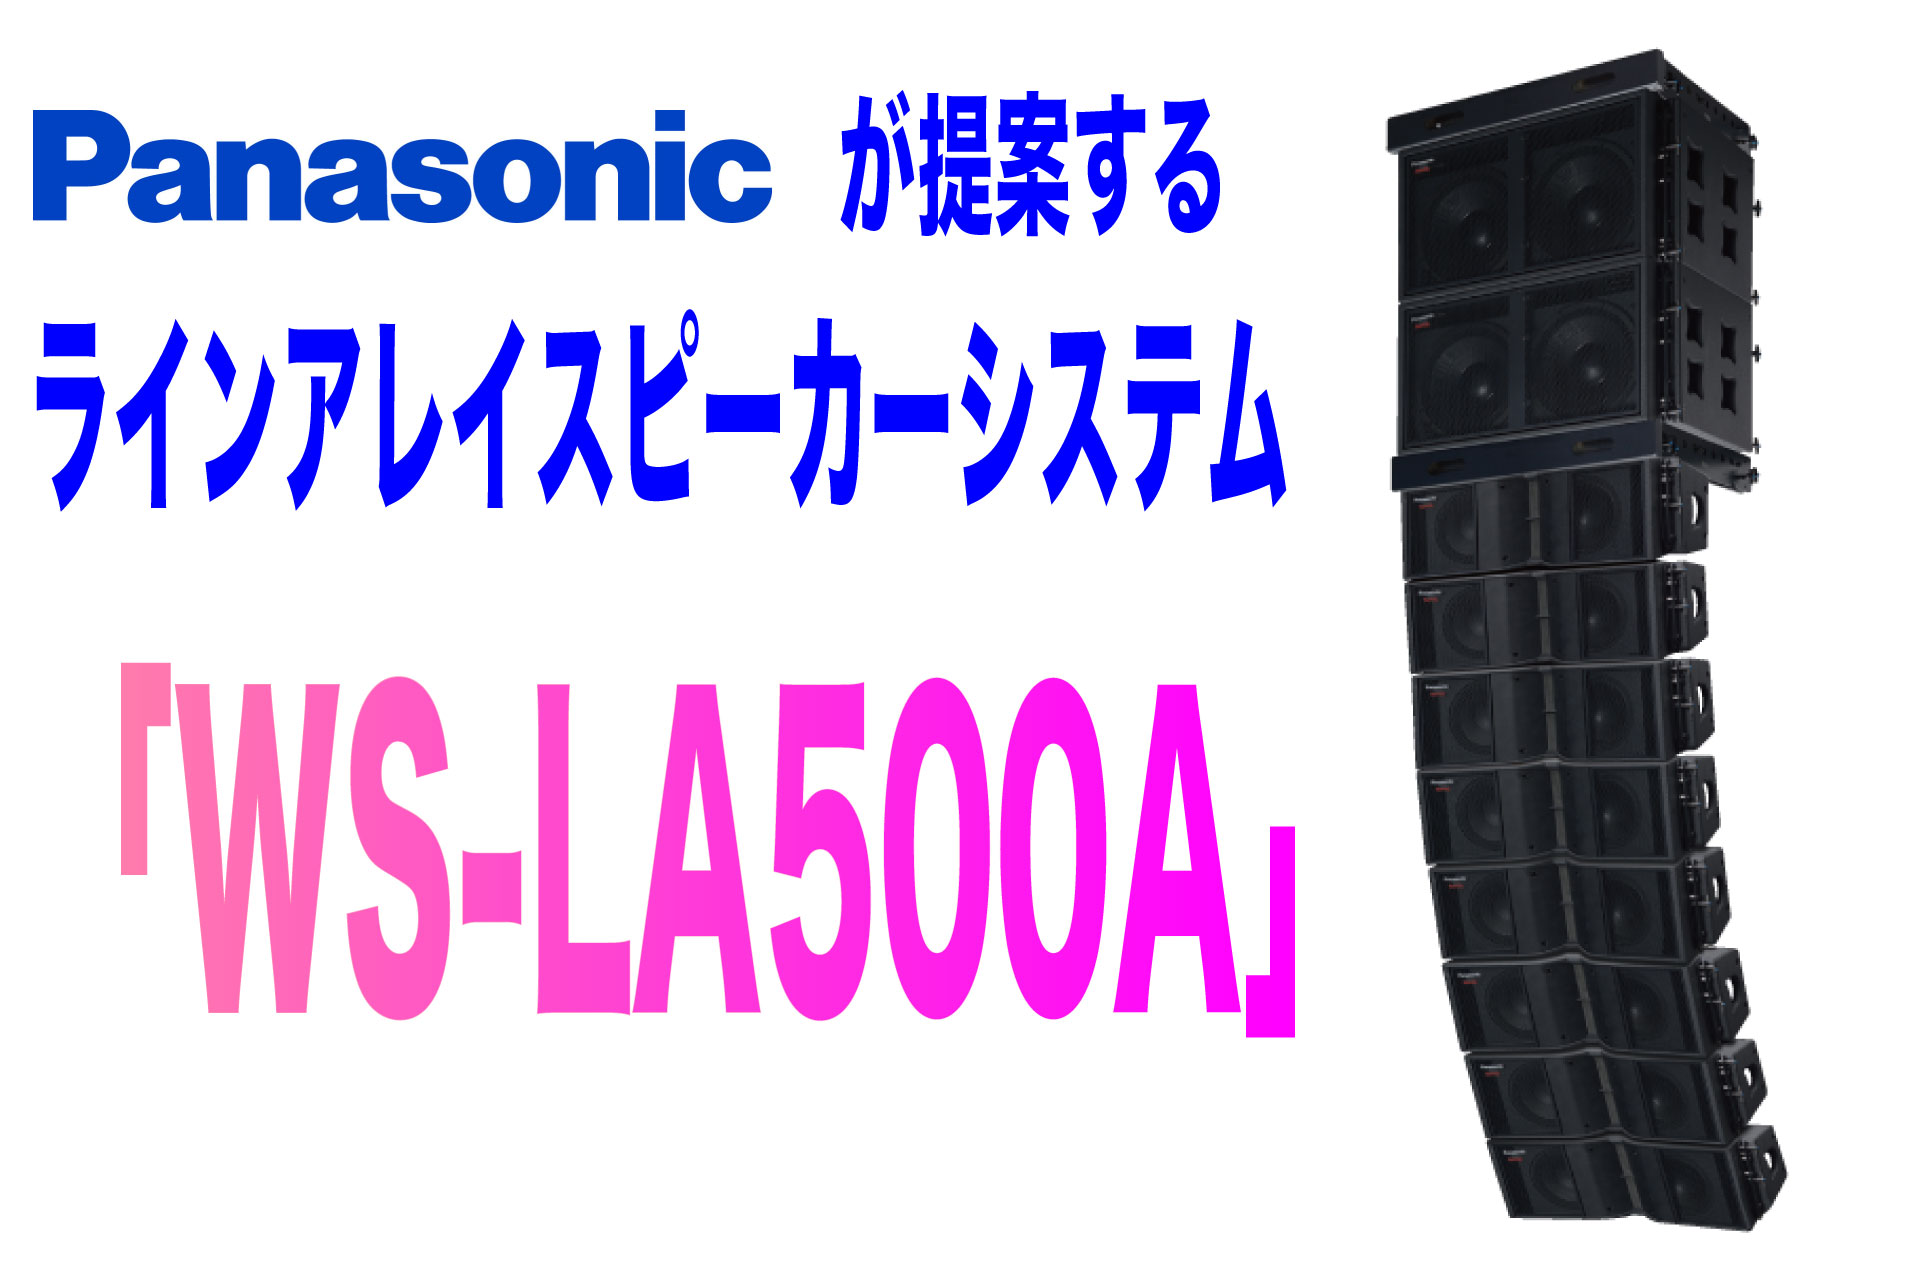 Panasonicが提案するラインアレイスピーカーシステム Ws La500a Pa Information For Beginner